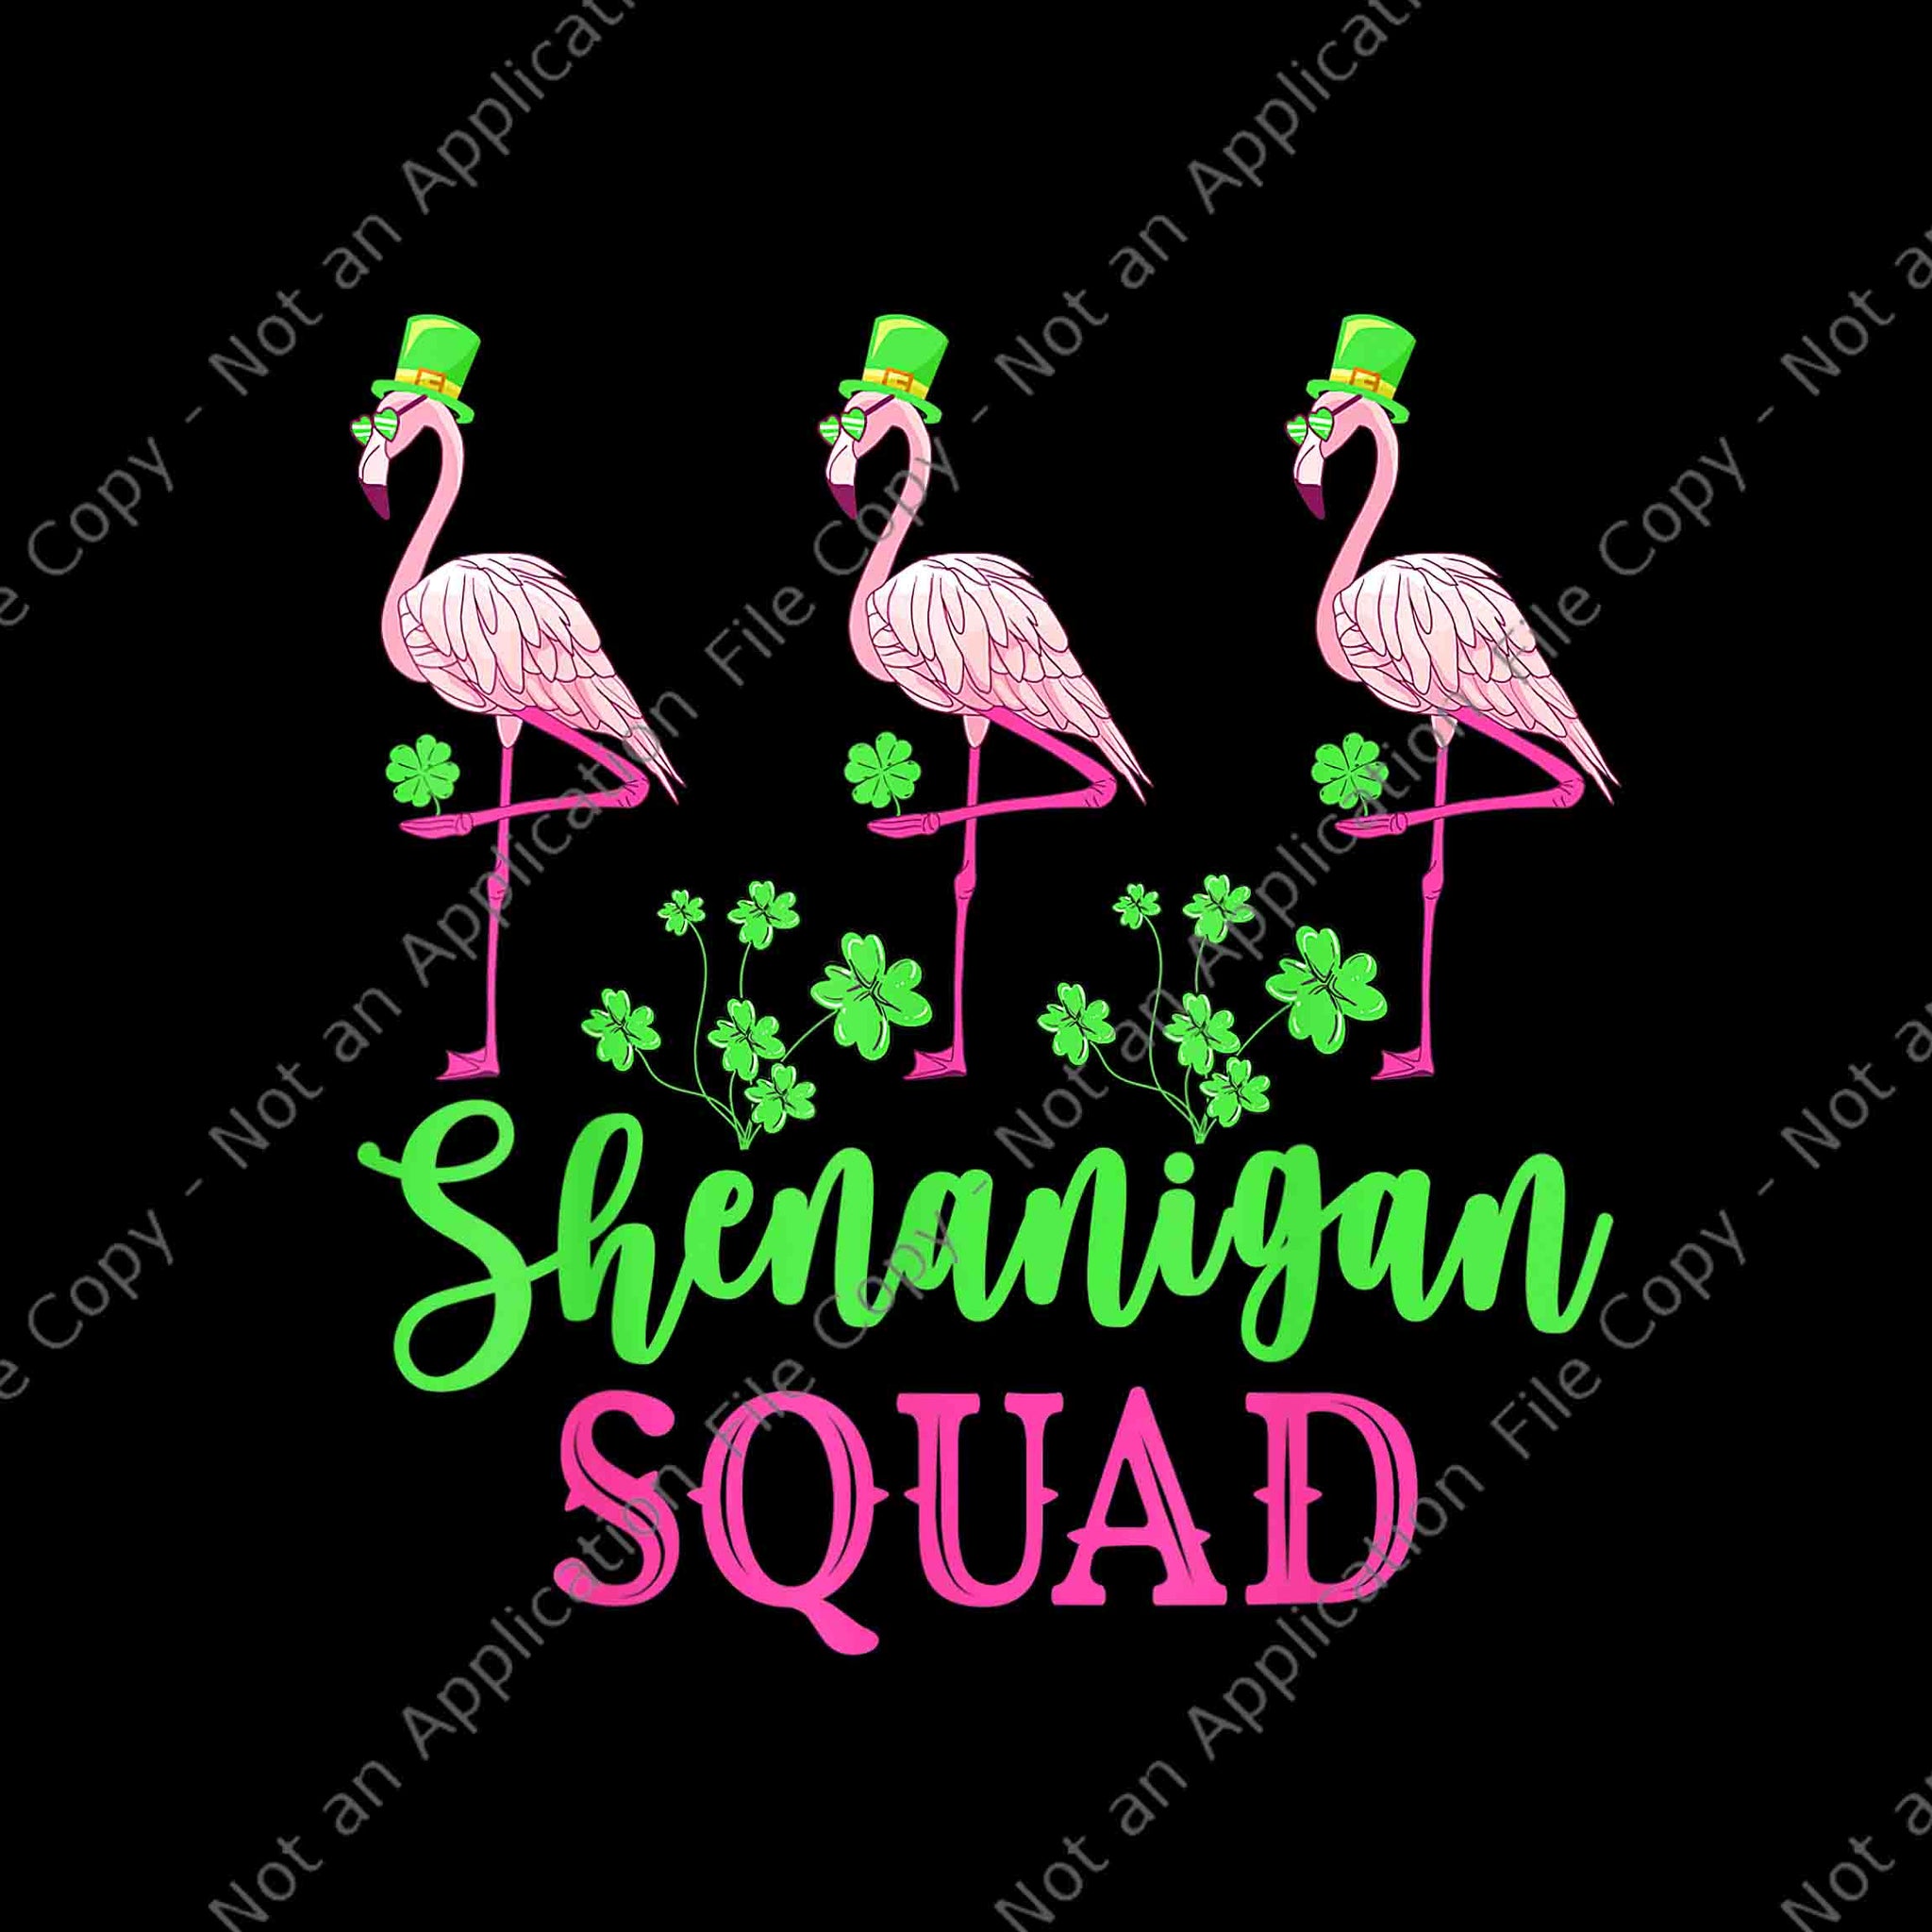 Shenanigan Squad Irish Flamingo Leprechaun St Patrick's Day Png, Shenanigan Squad Flamingo Png, Flamingo Patrick Day Png, Patrick Day Png